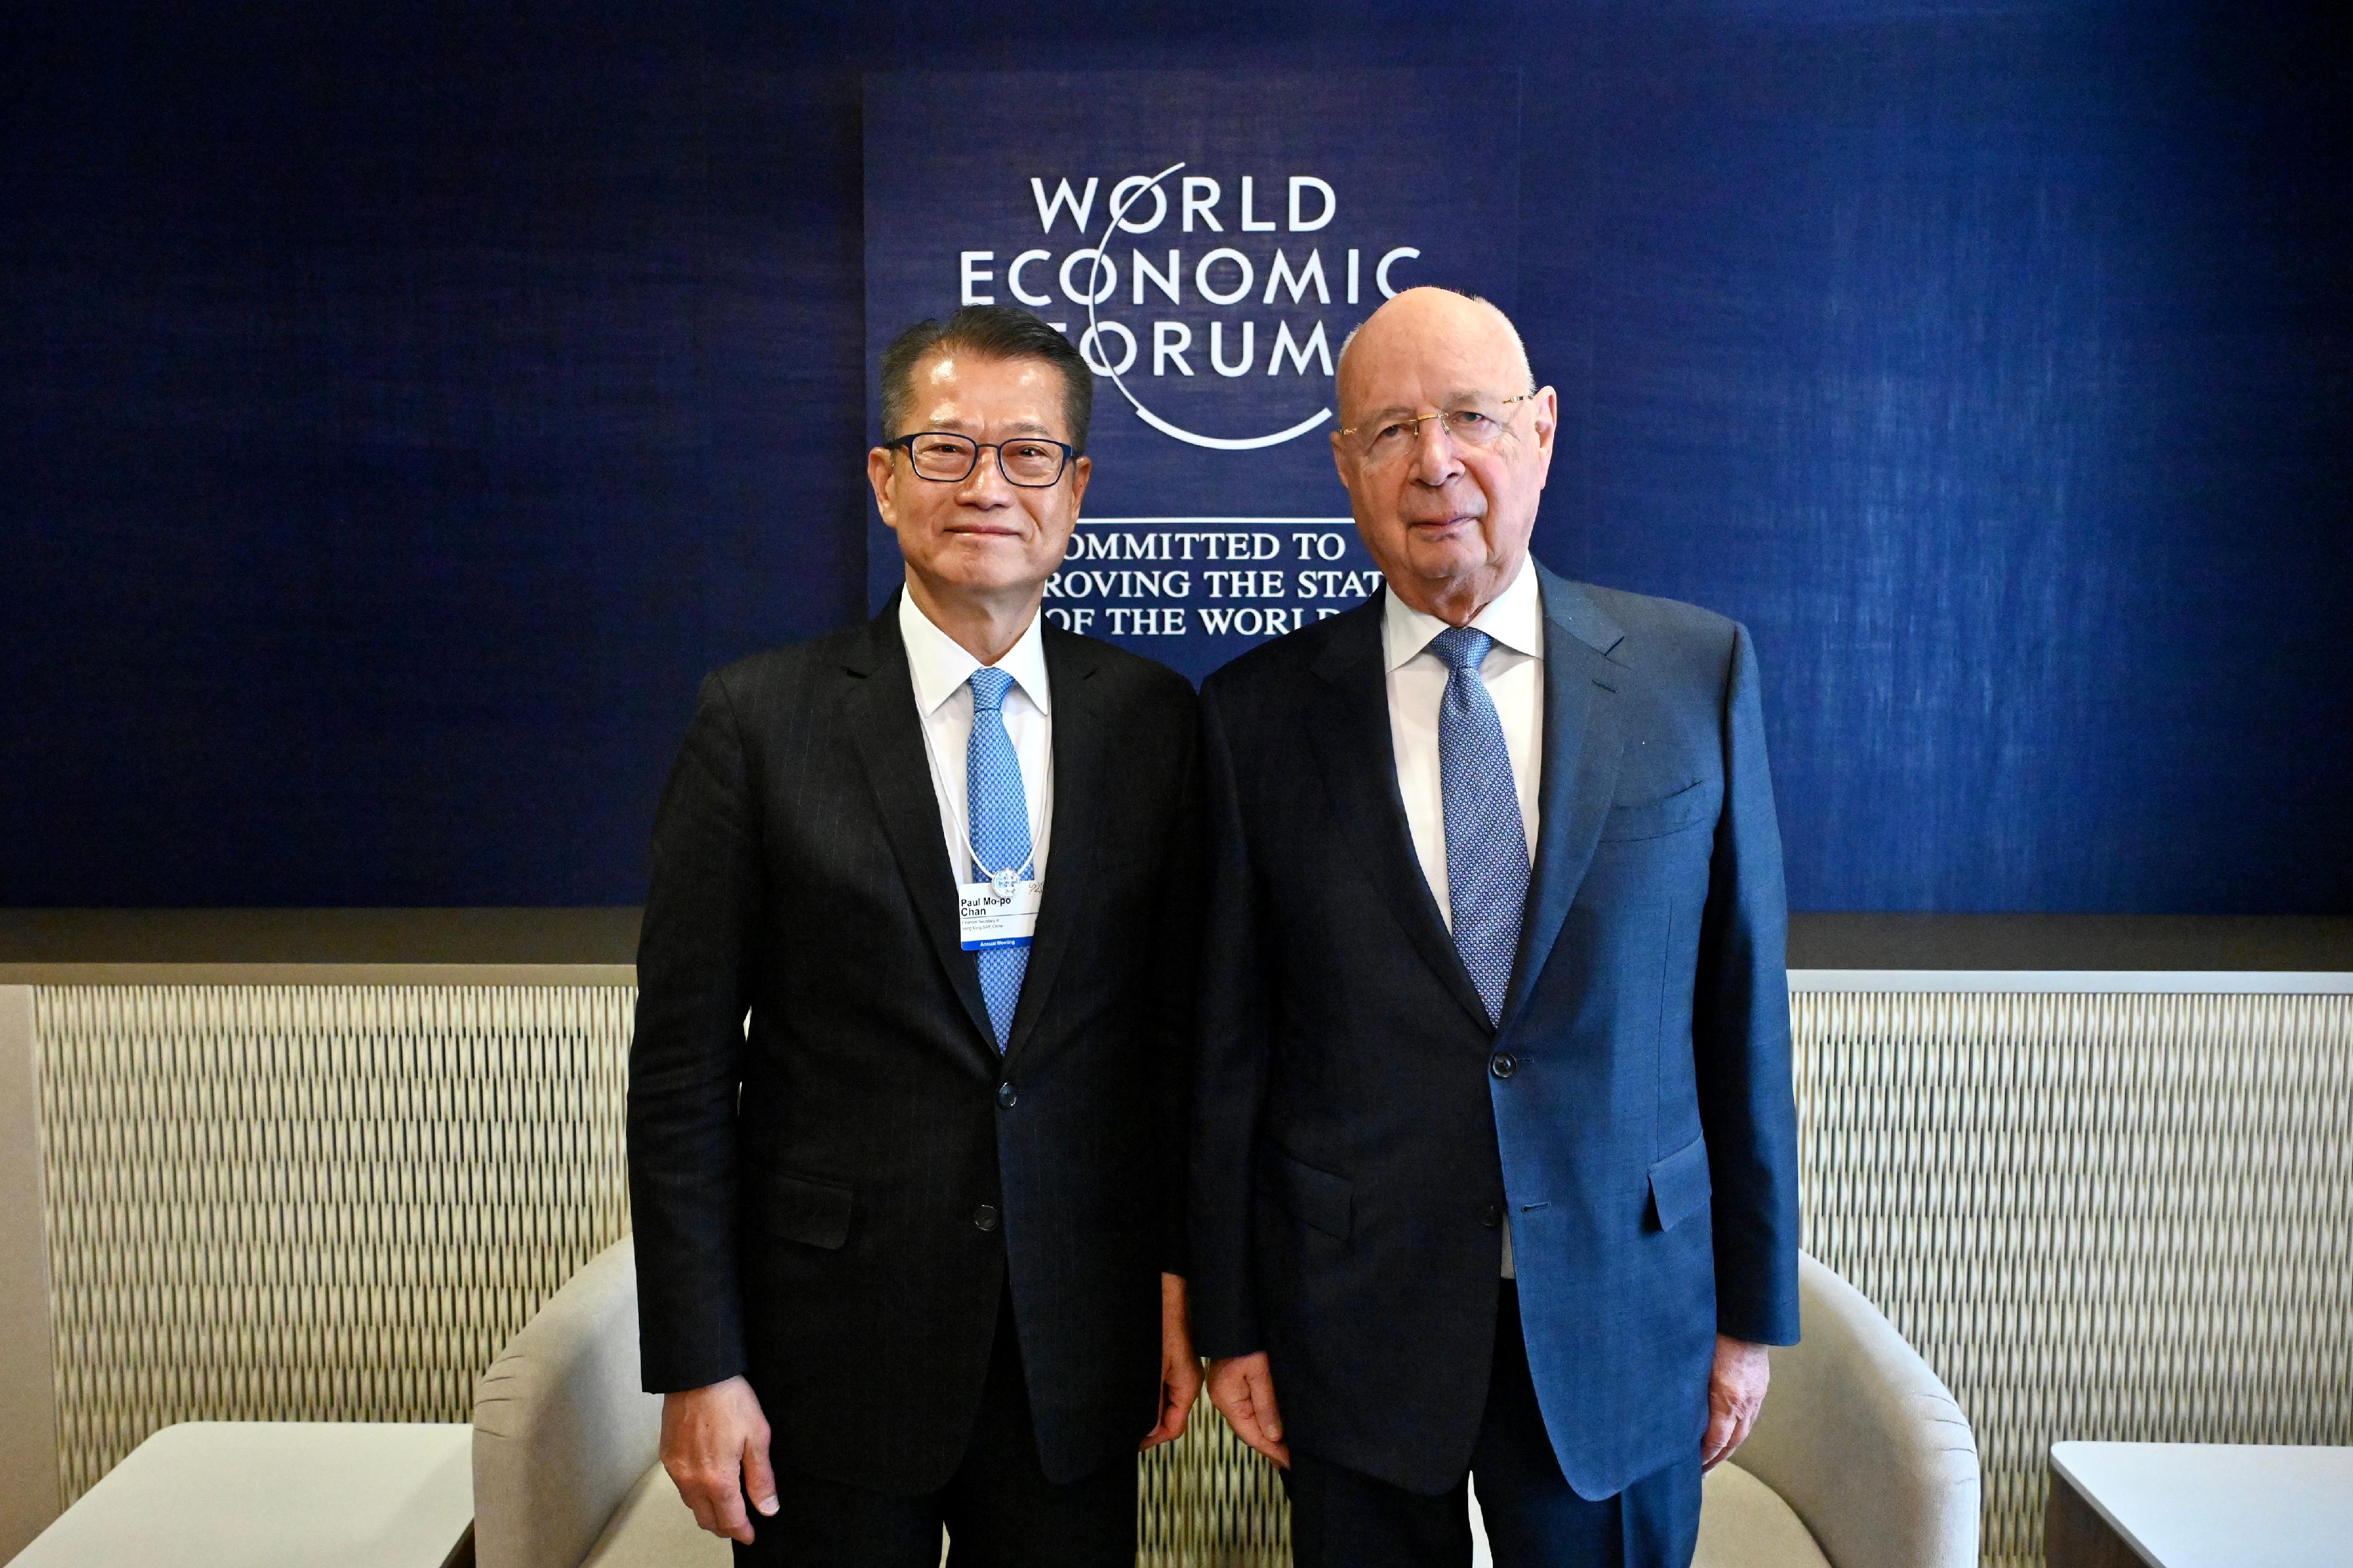 財政司司長陳茂波昨日（達沃斯時間一月十八日）繼續在瑞士達沃斯出席世界經濟論壇年會。圖示陳茂波（左）與世界經濟論壇創辦人及執行主席施瓦布教授（右）會面。